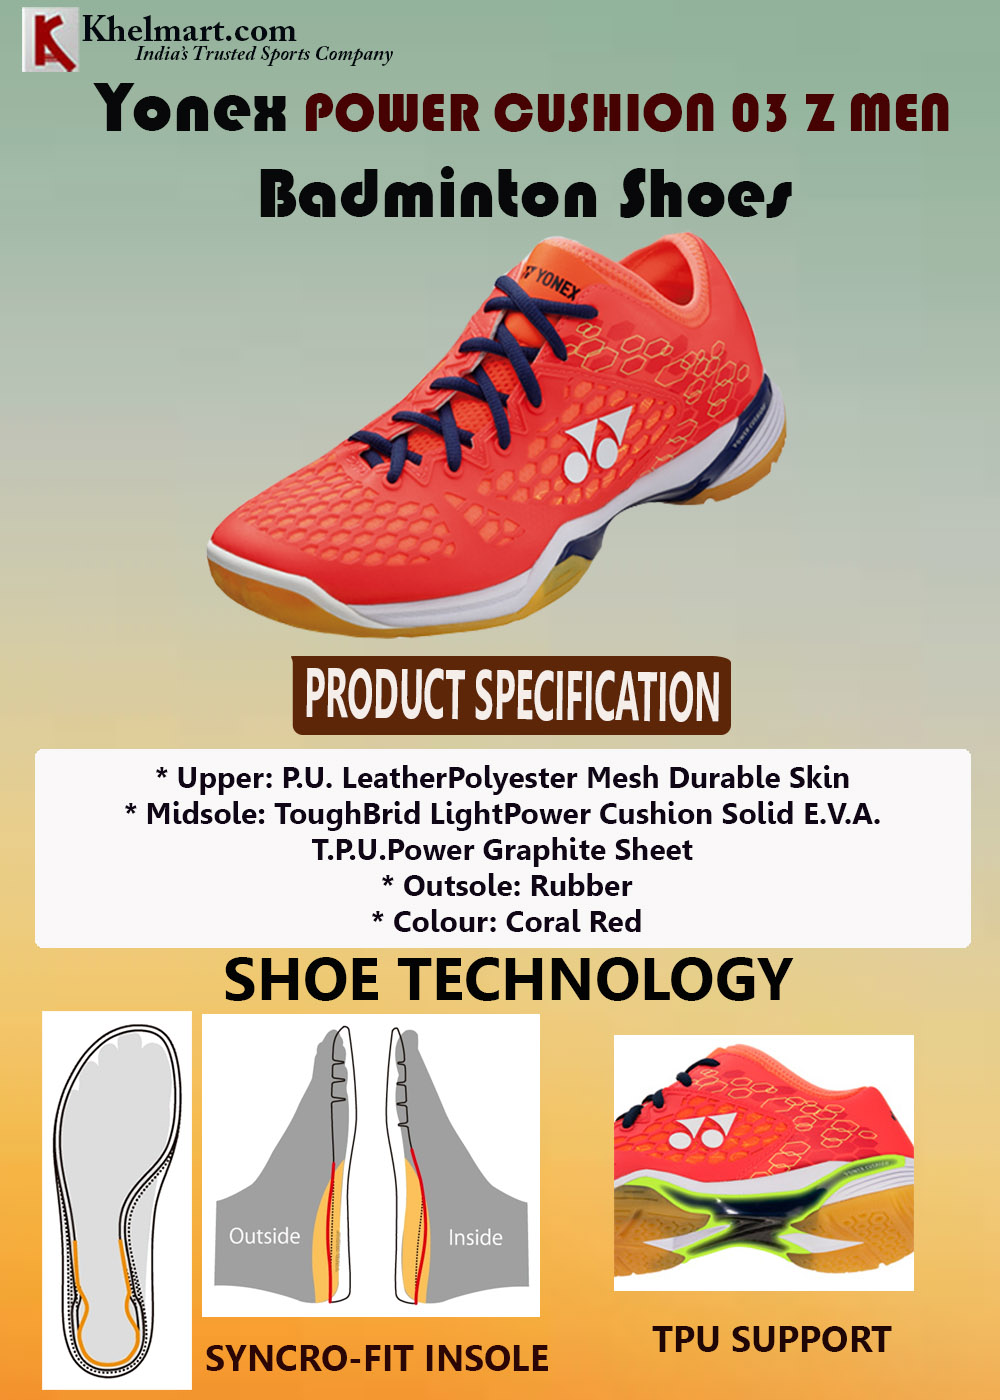 yonex badminton shoes 2018